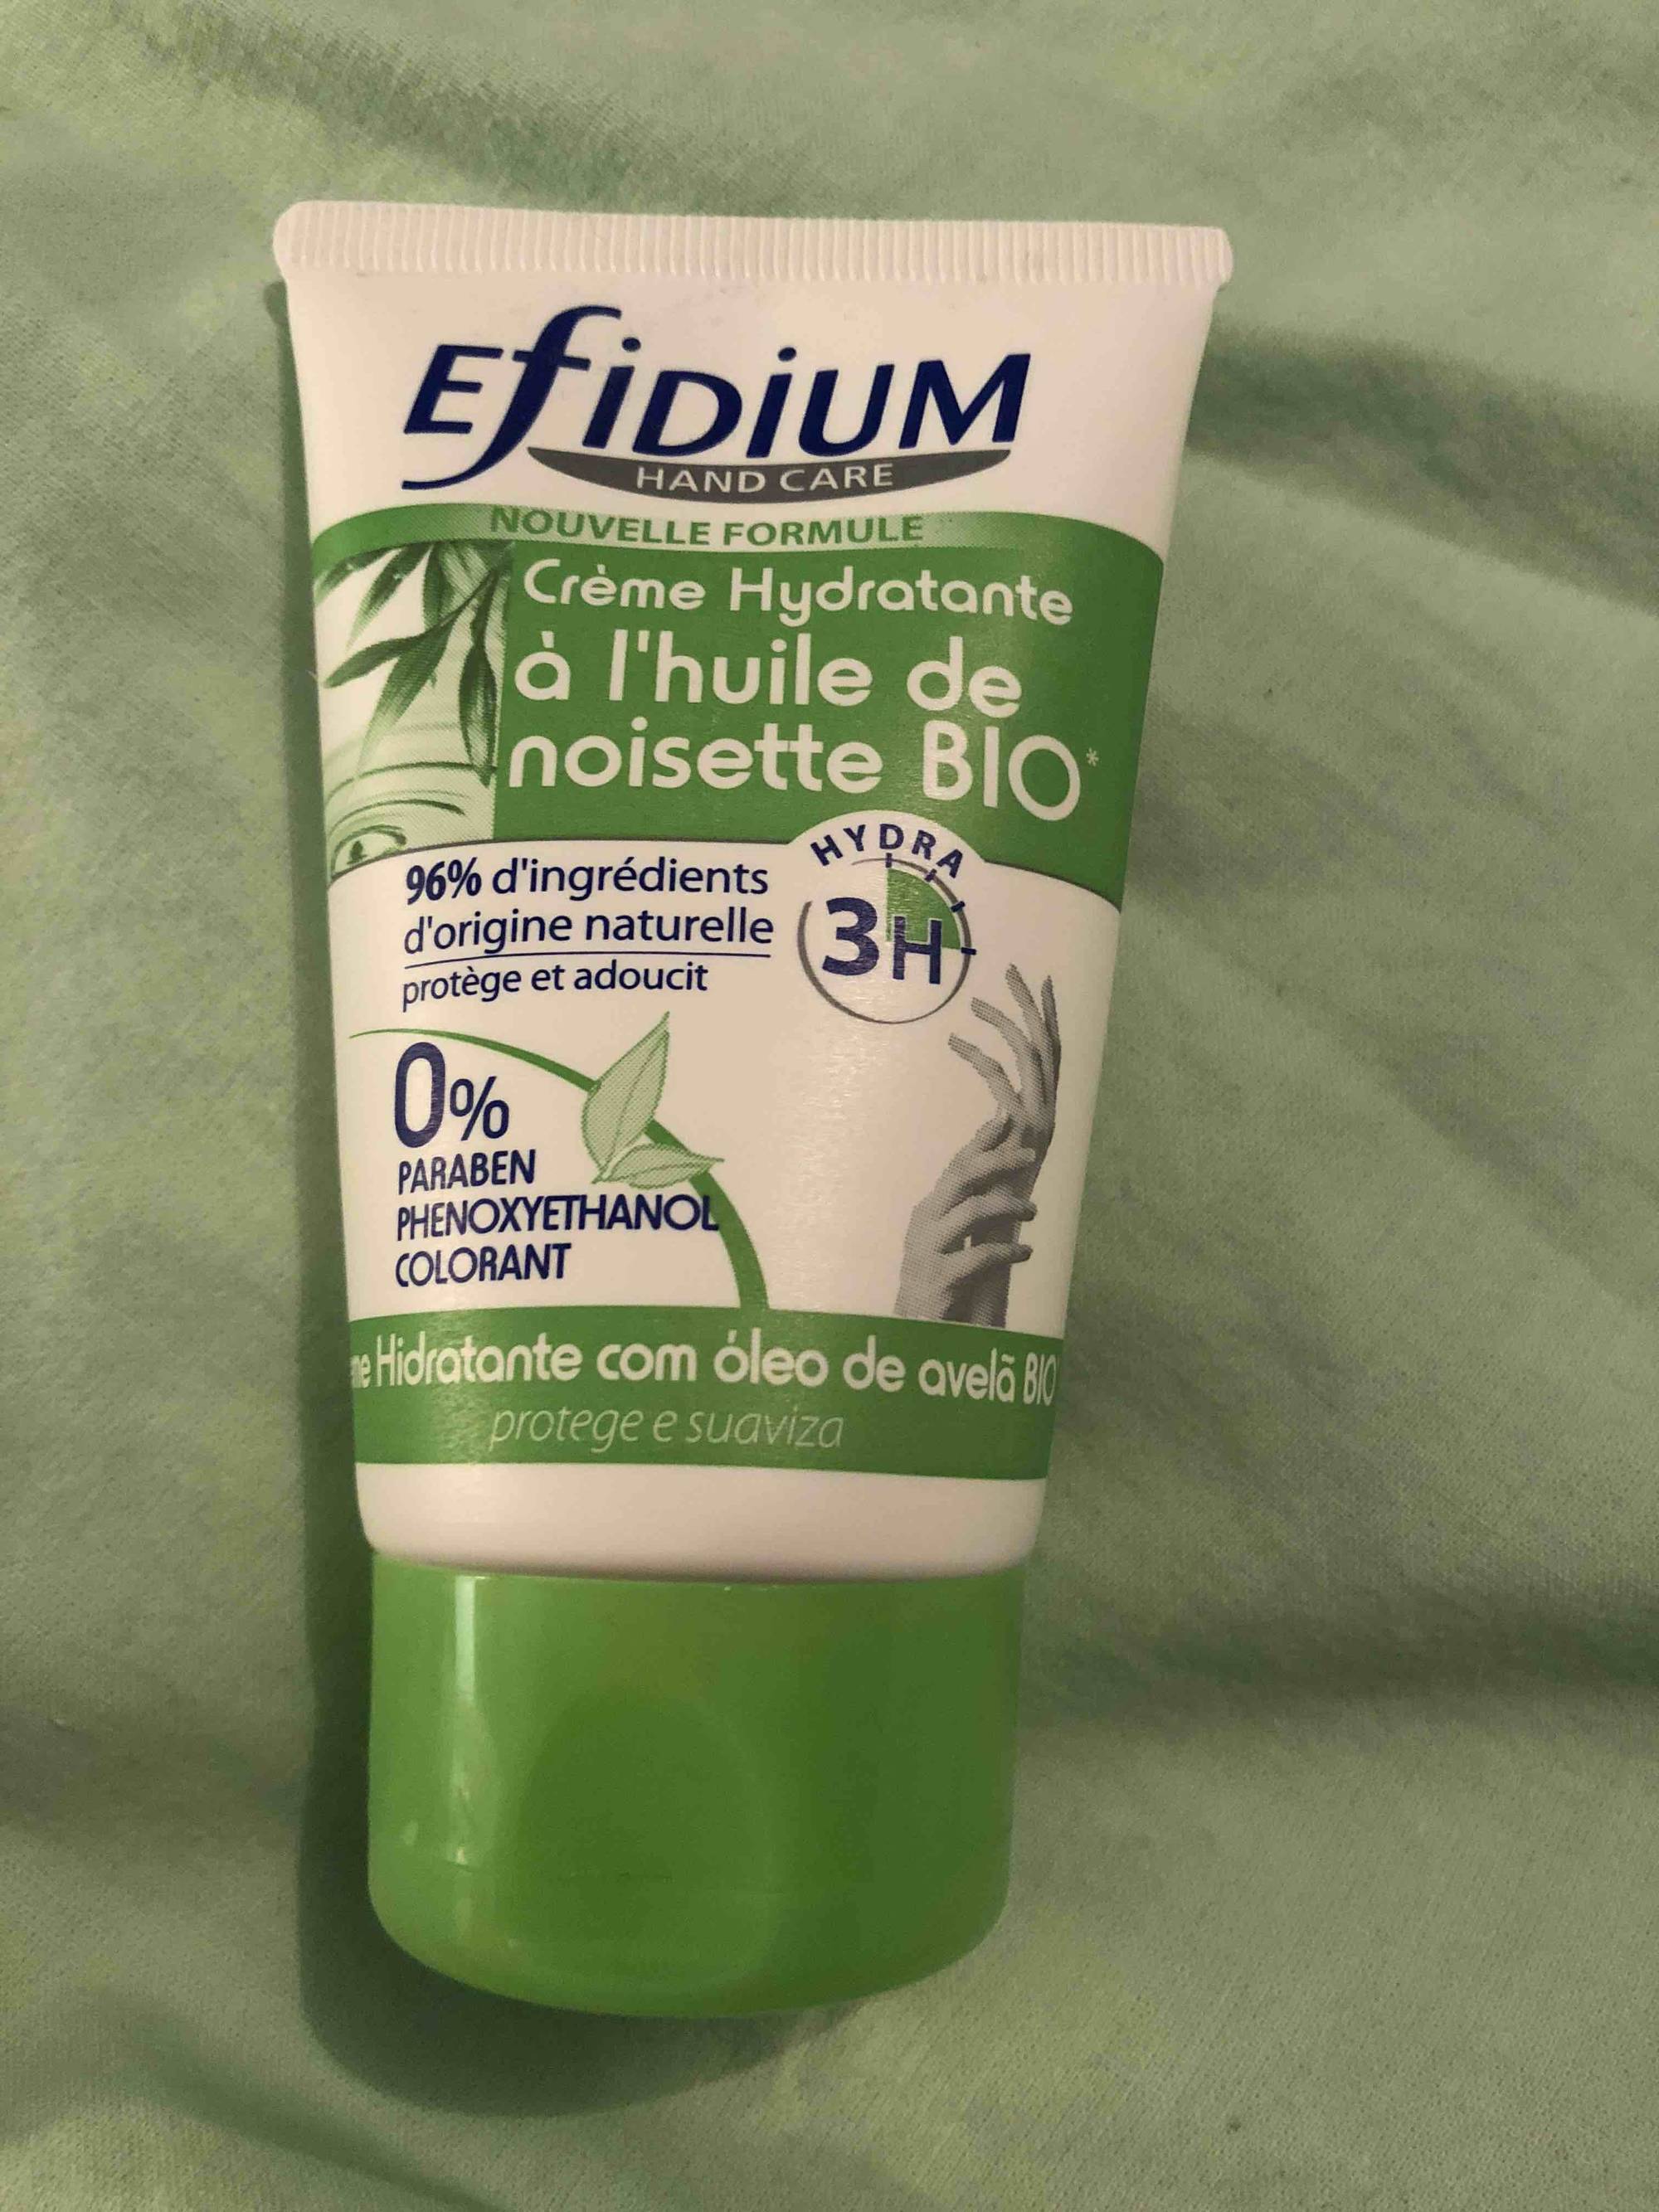 EFIDIUM - Hand care - Crème hydratante à l'huile de noisette bio